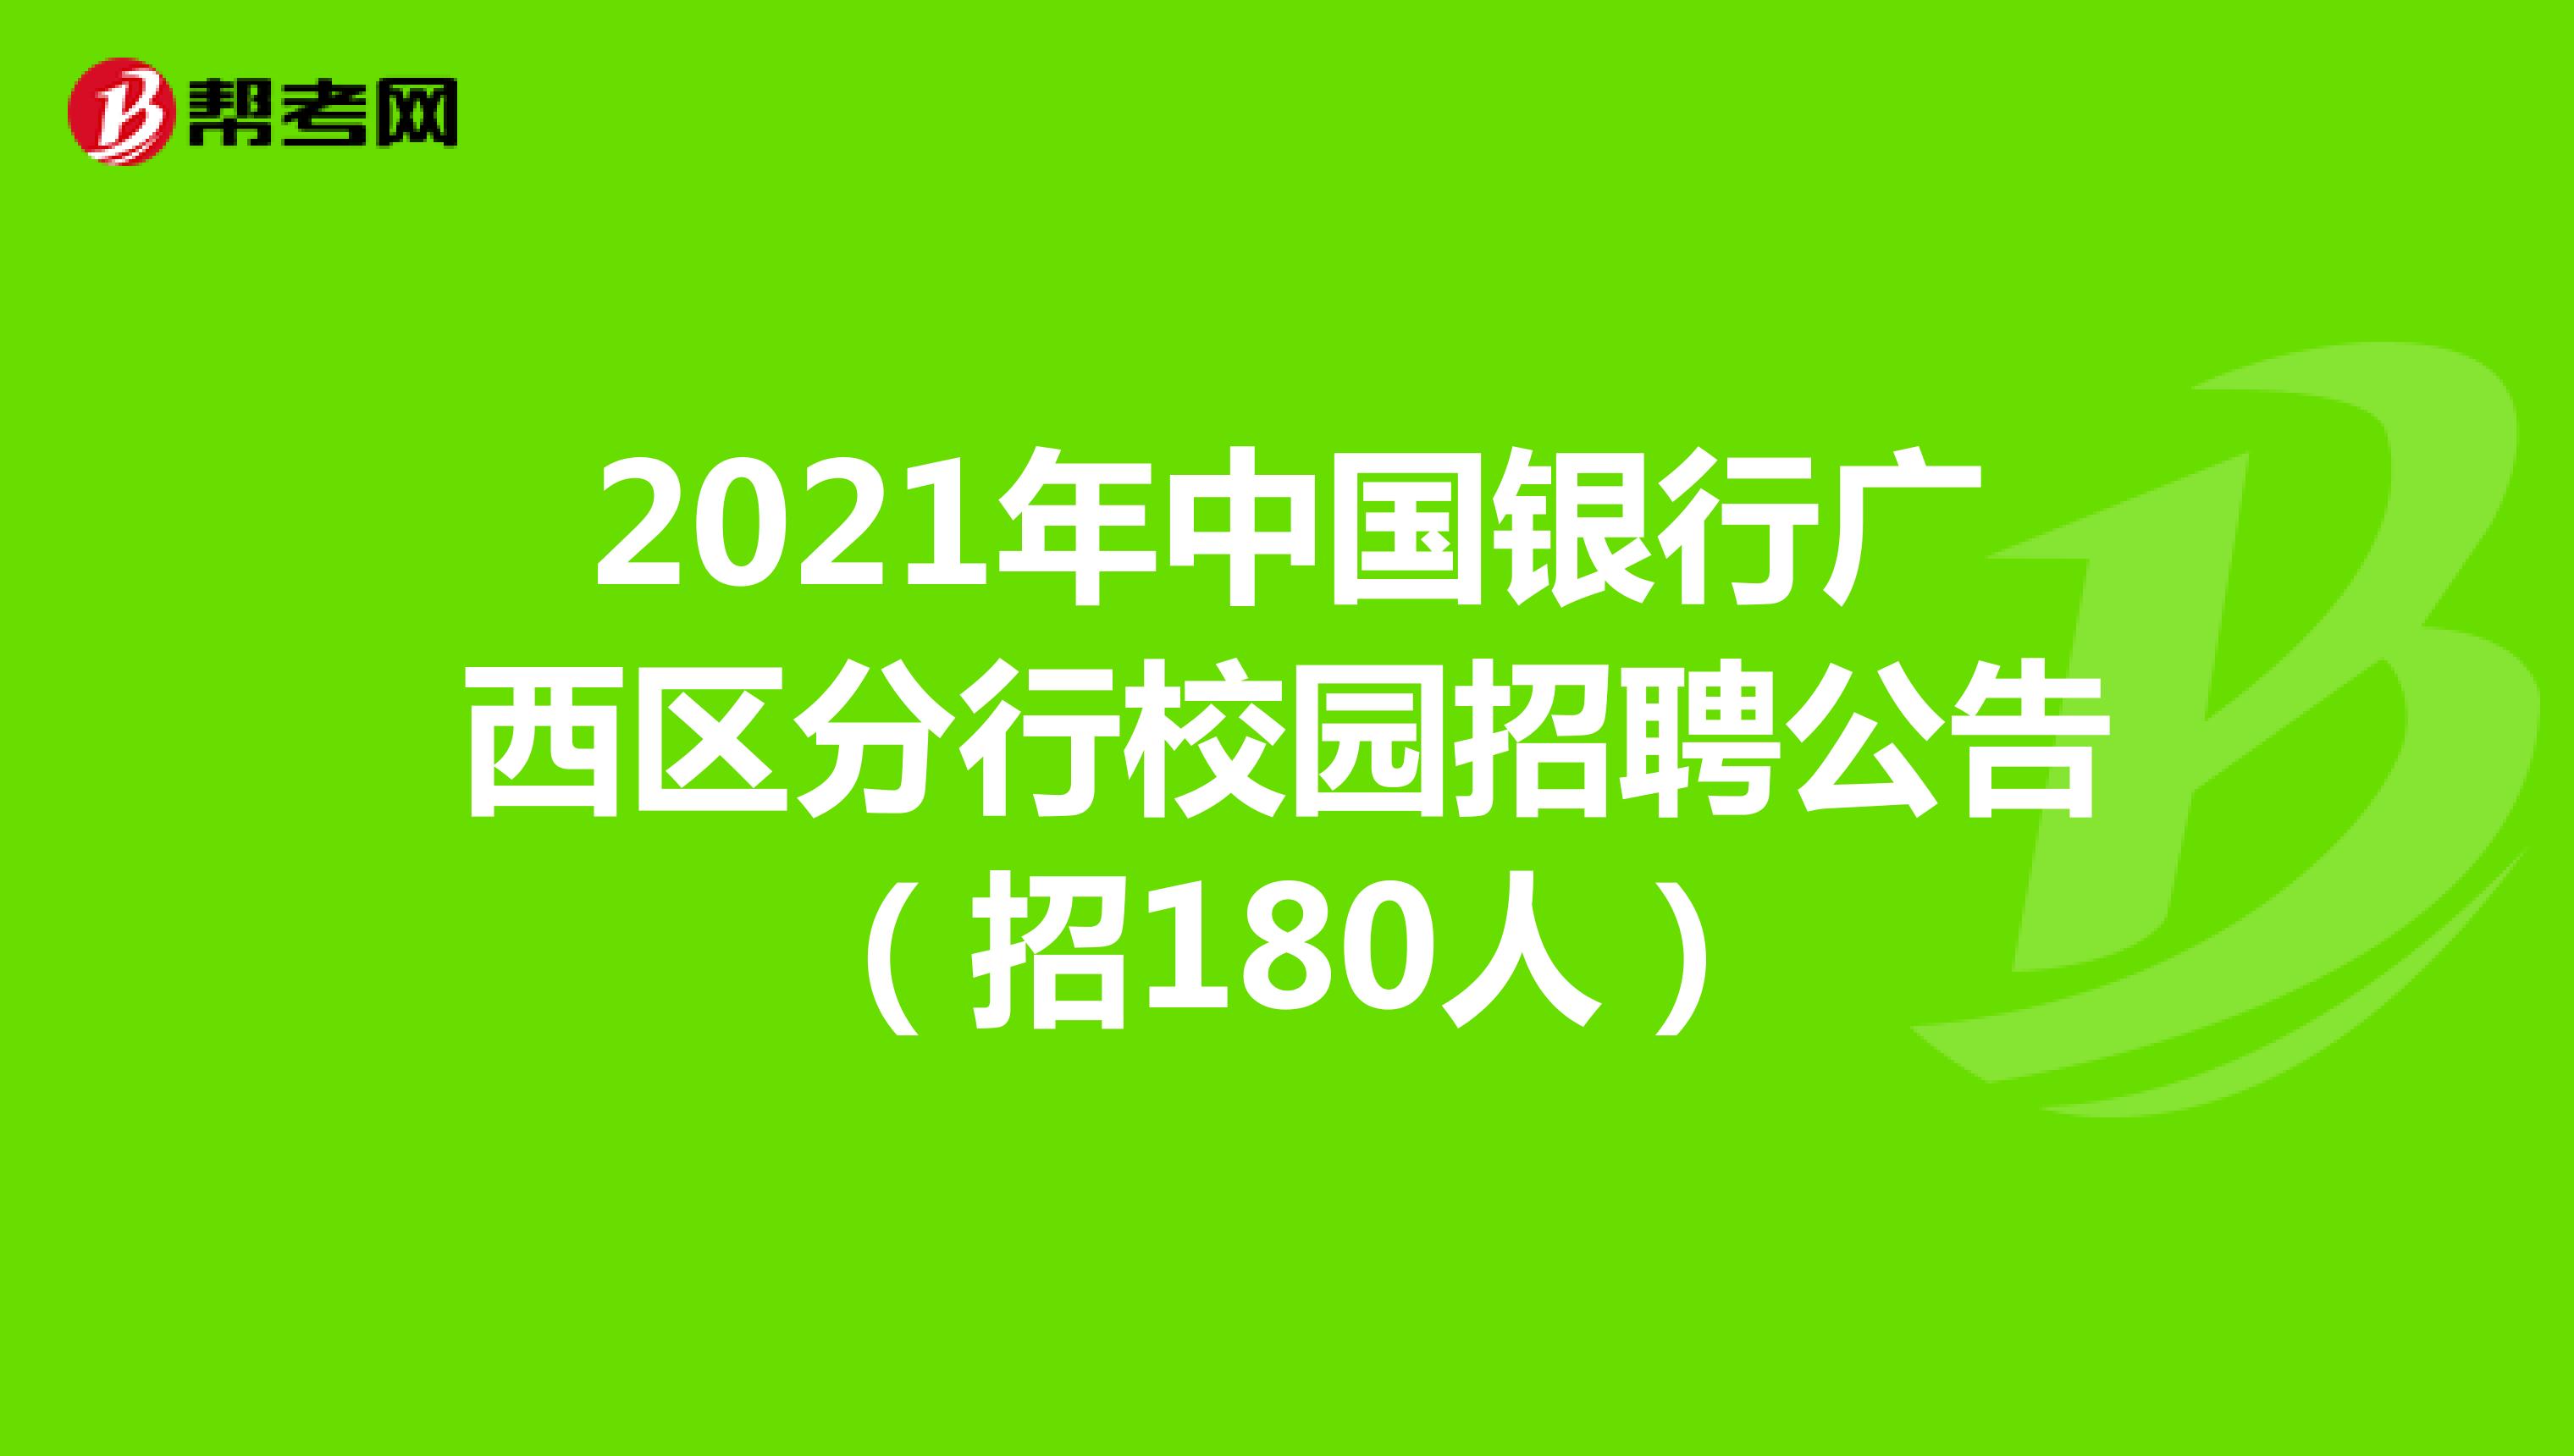 2021年中国银行广西区分行校园招聘公告（招180人）